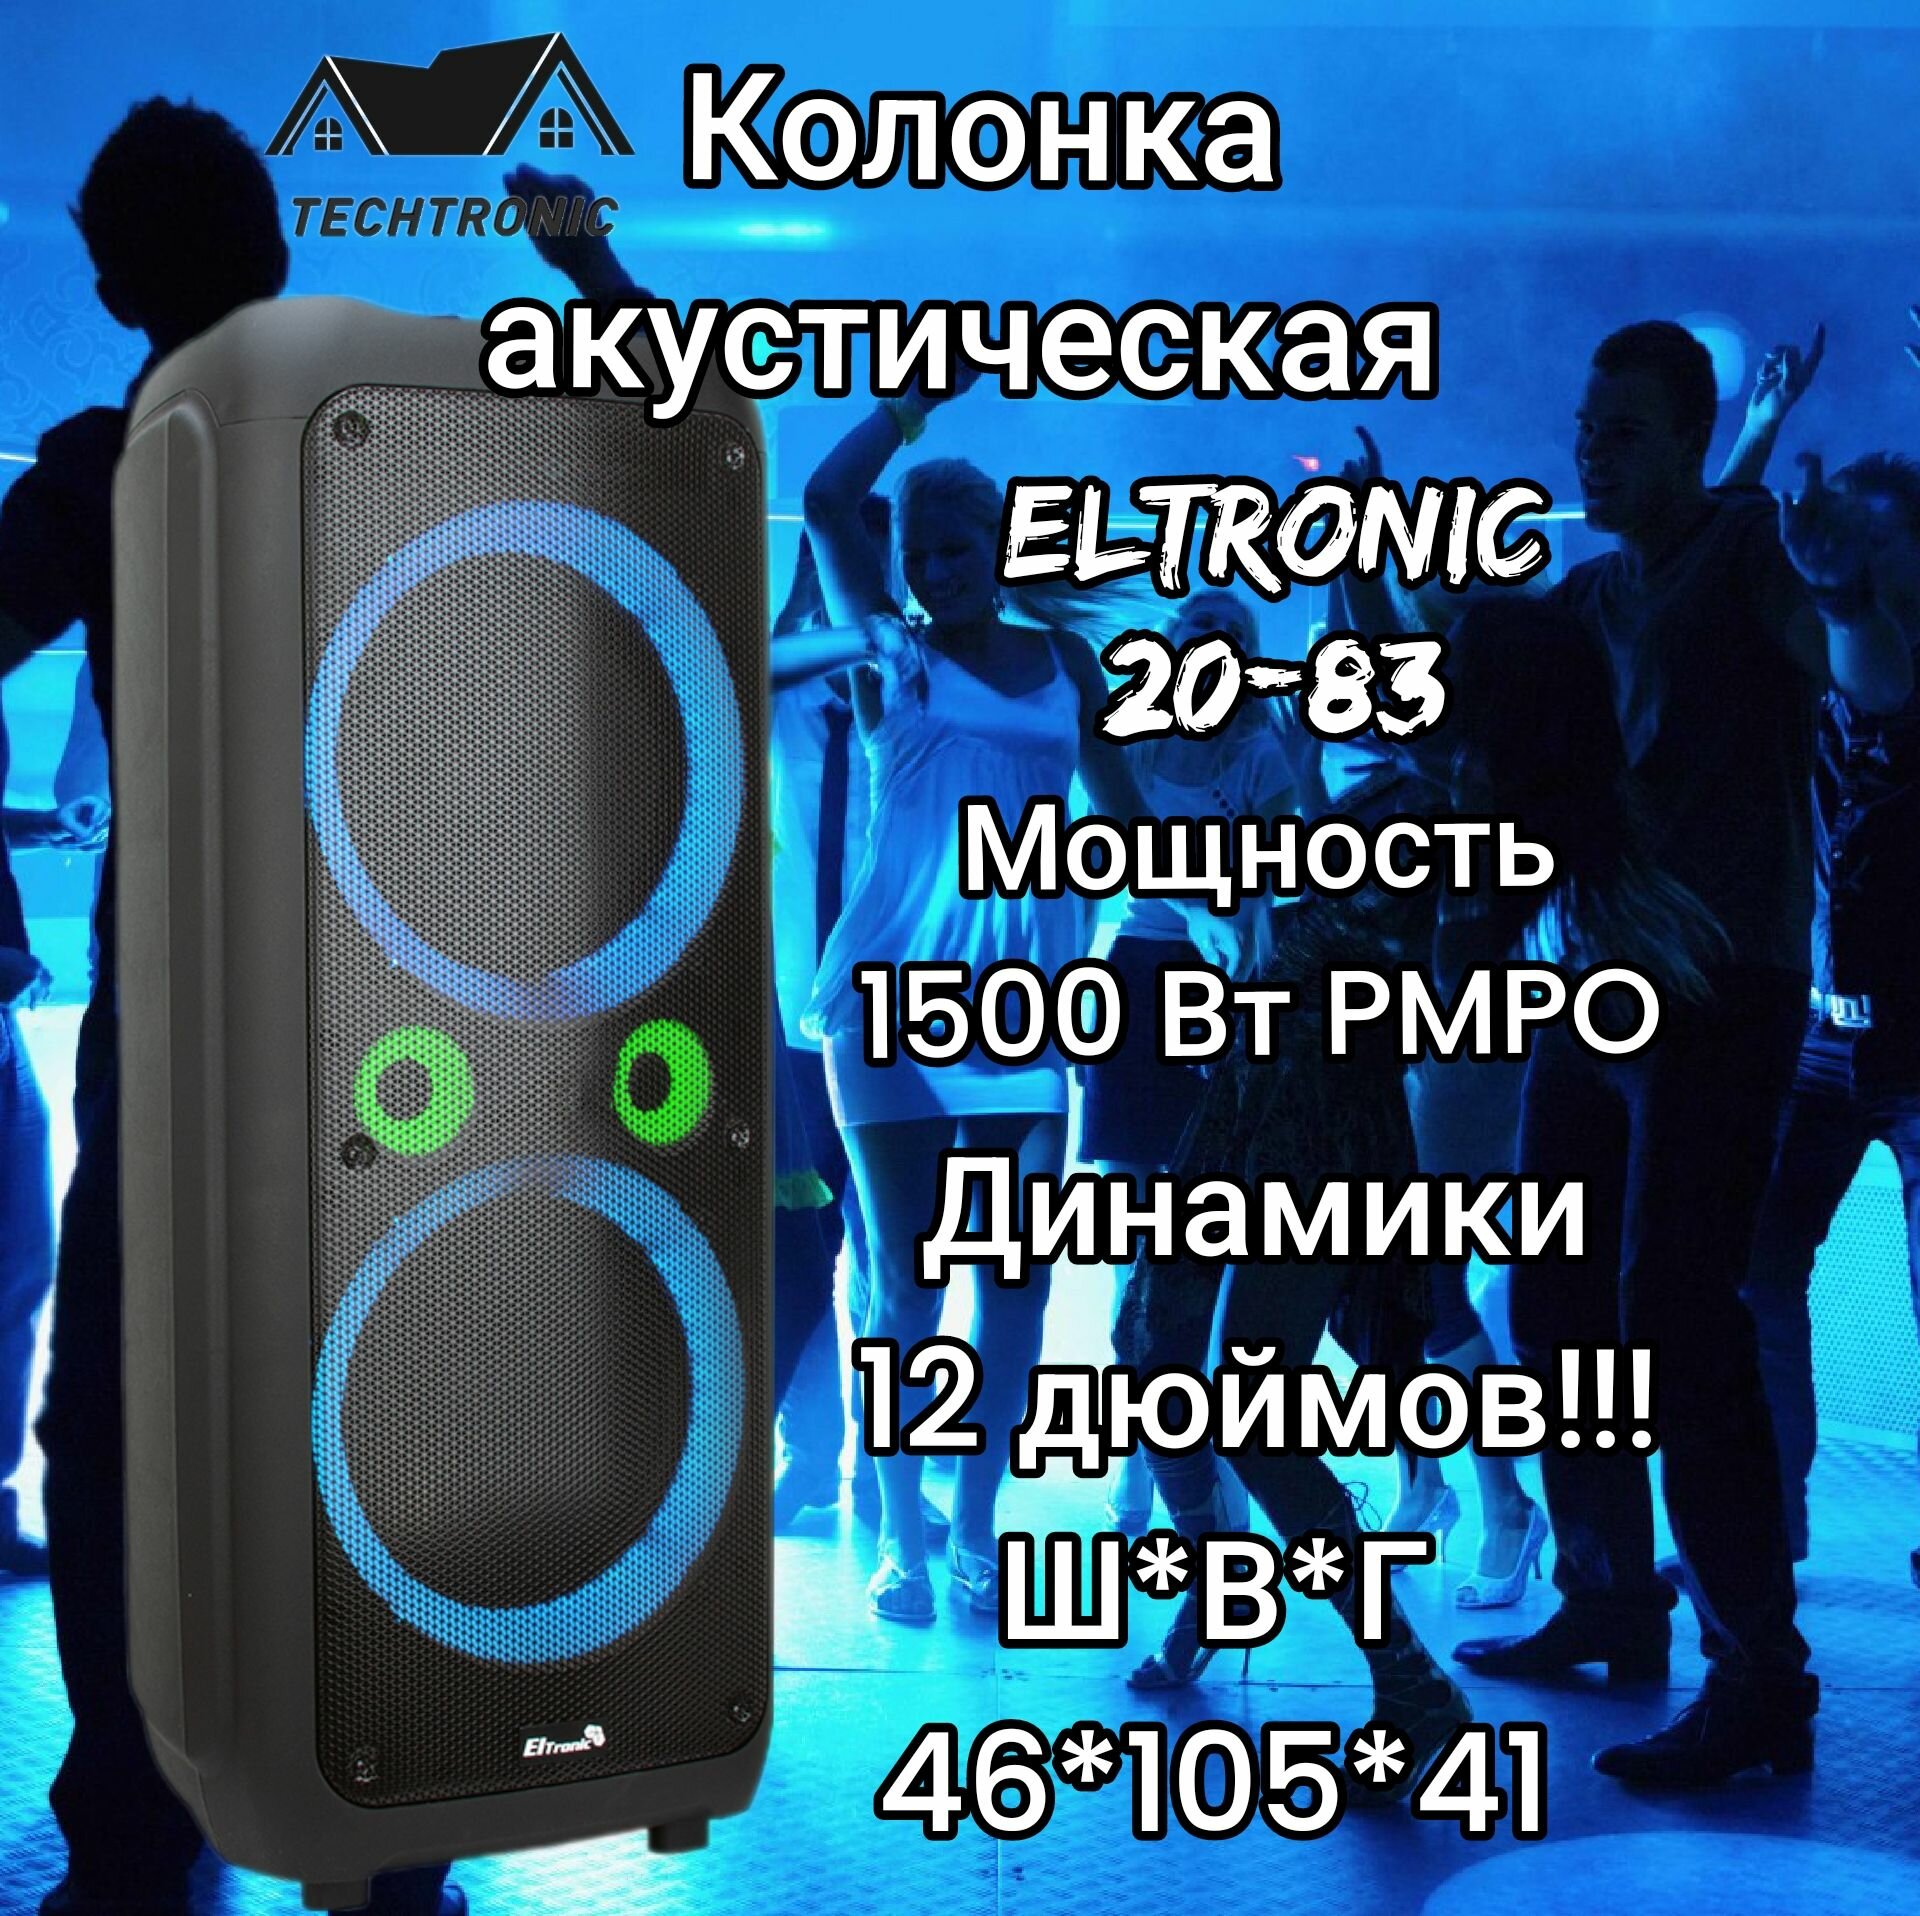 Большая музыкальная беспроводная колонка Eltronic 20-83 DANCE BOX 1500